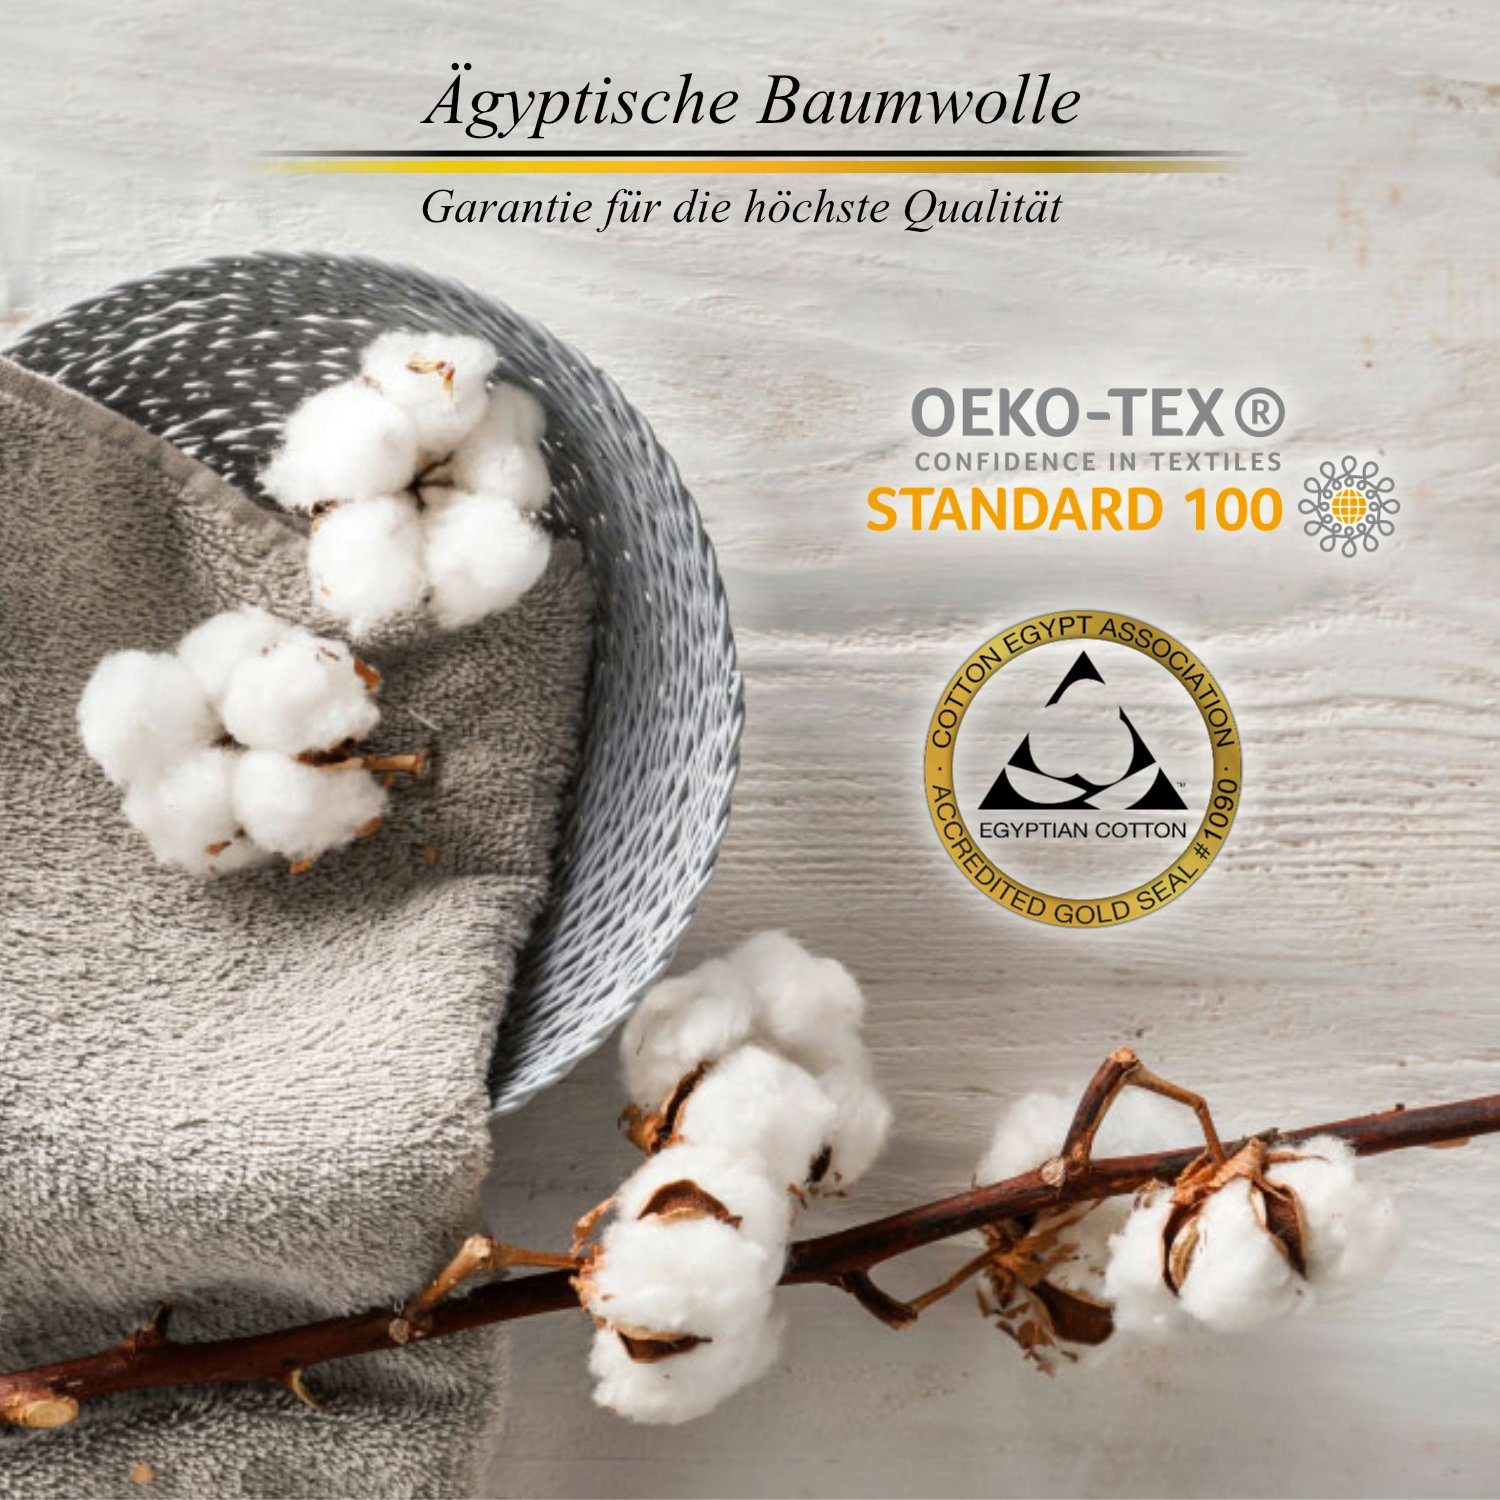 (1-St), Aymando 600 Handtuch 100% Baumwolle Dubai g/m², Kollektion, aus Dark 70x140cm Baumwolle ägyptischer Blue-Gold Badetuch